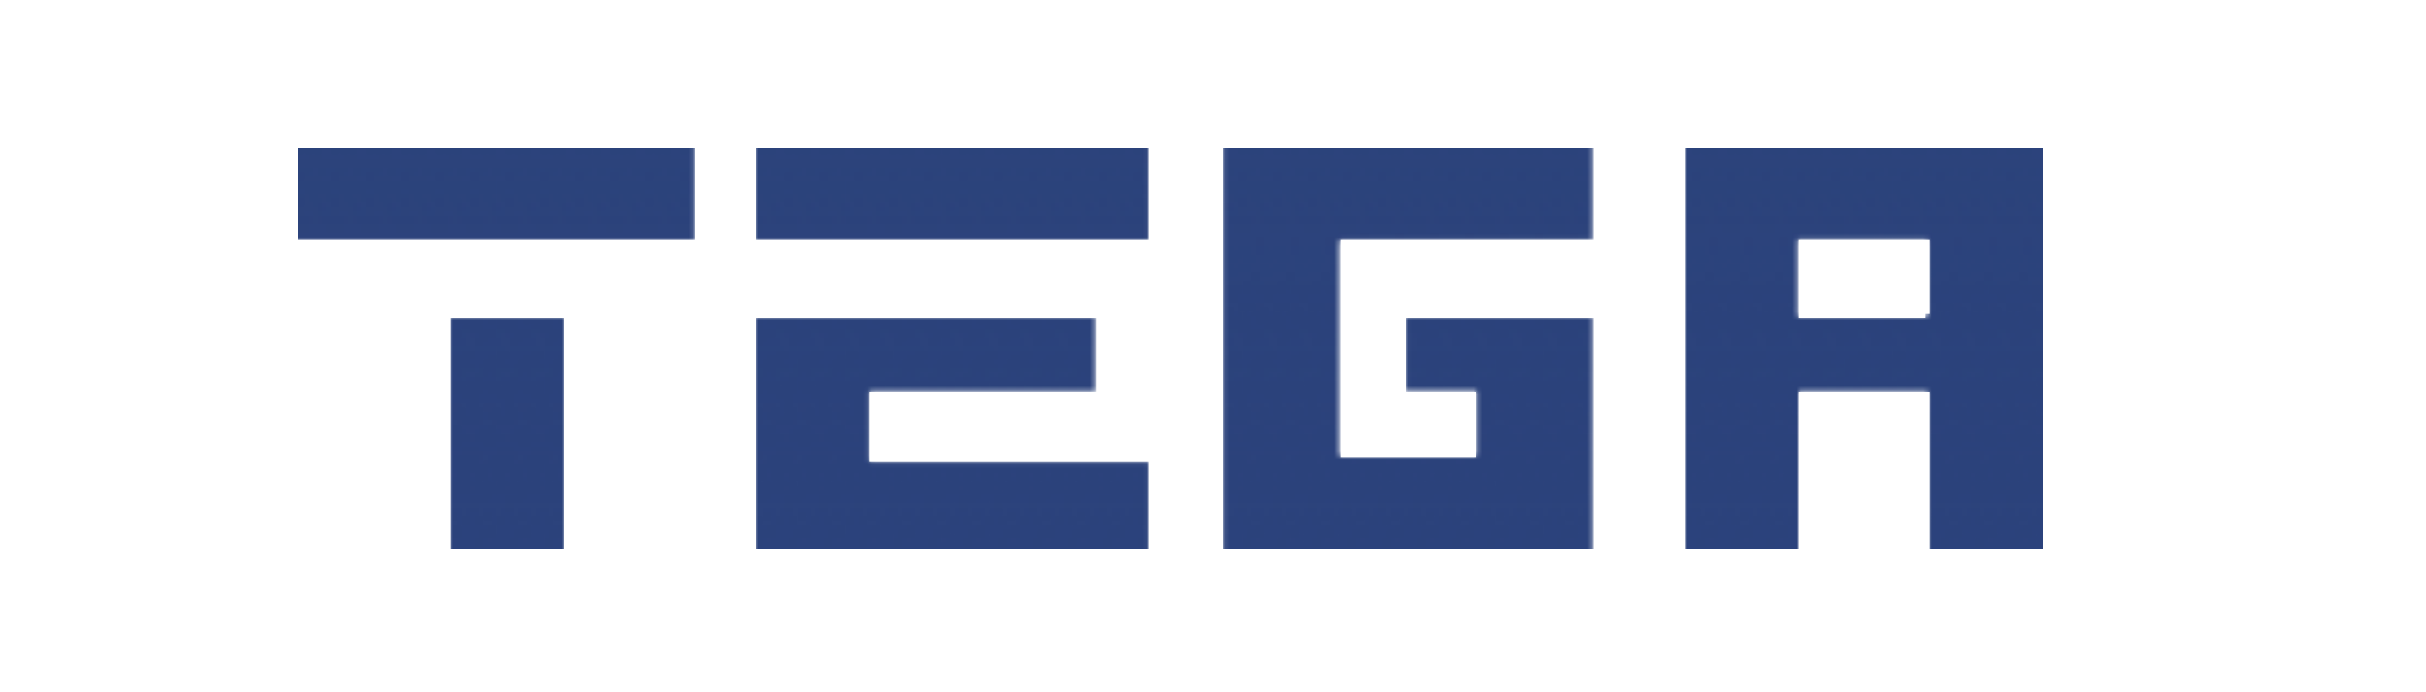 tega-logo